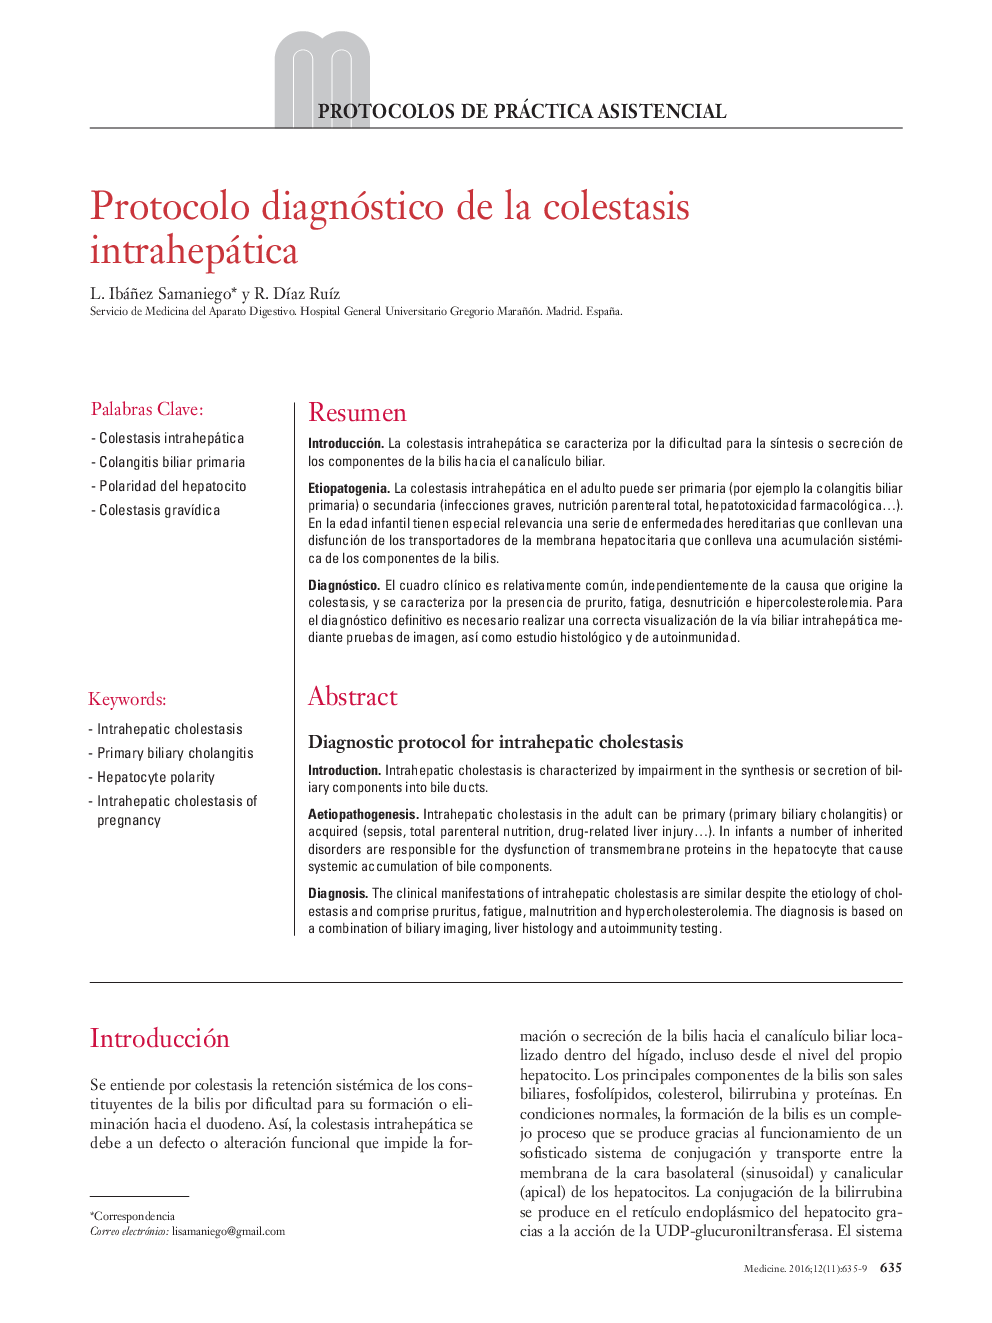 Protocolo diagnóstico de la colestasis intrahepática